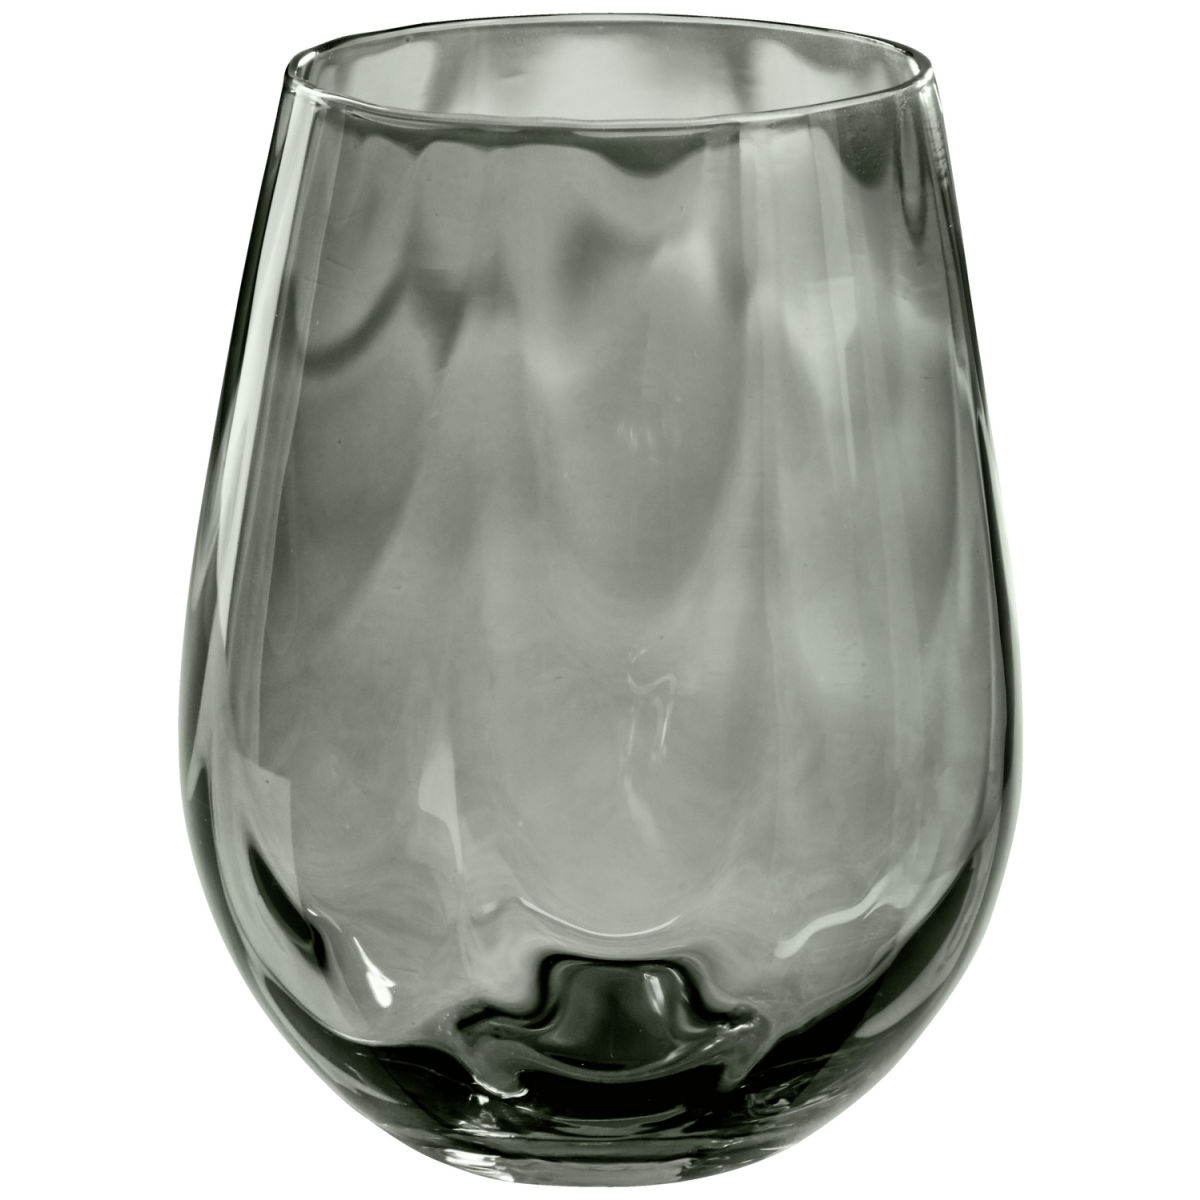 Vega Waterglas Benice; 595ml, 7.1x12.4 cm (ØxH); grijs; 6 stuk / verpakking